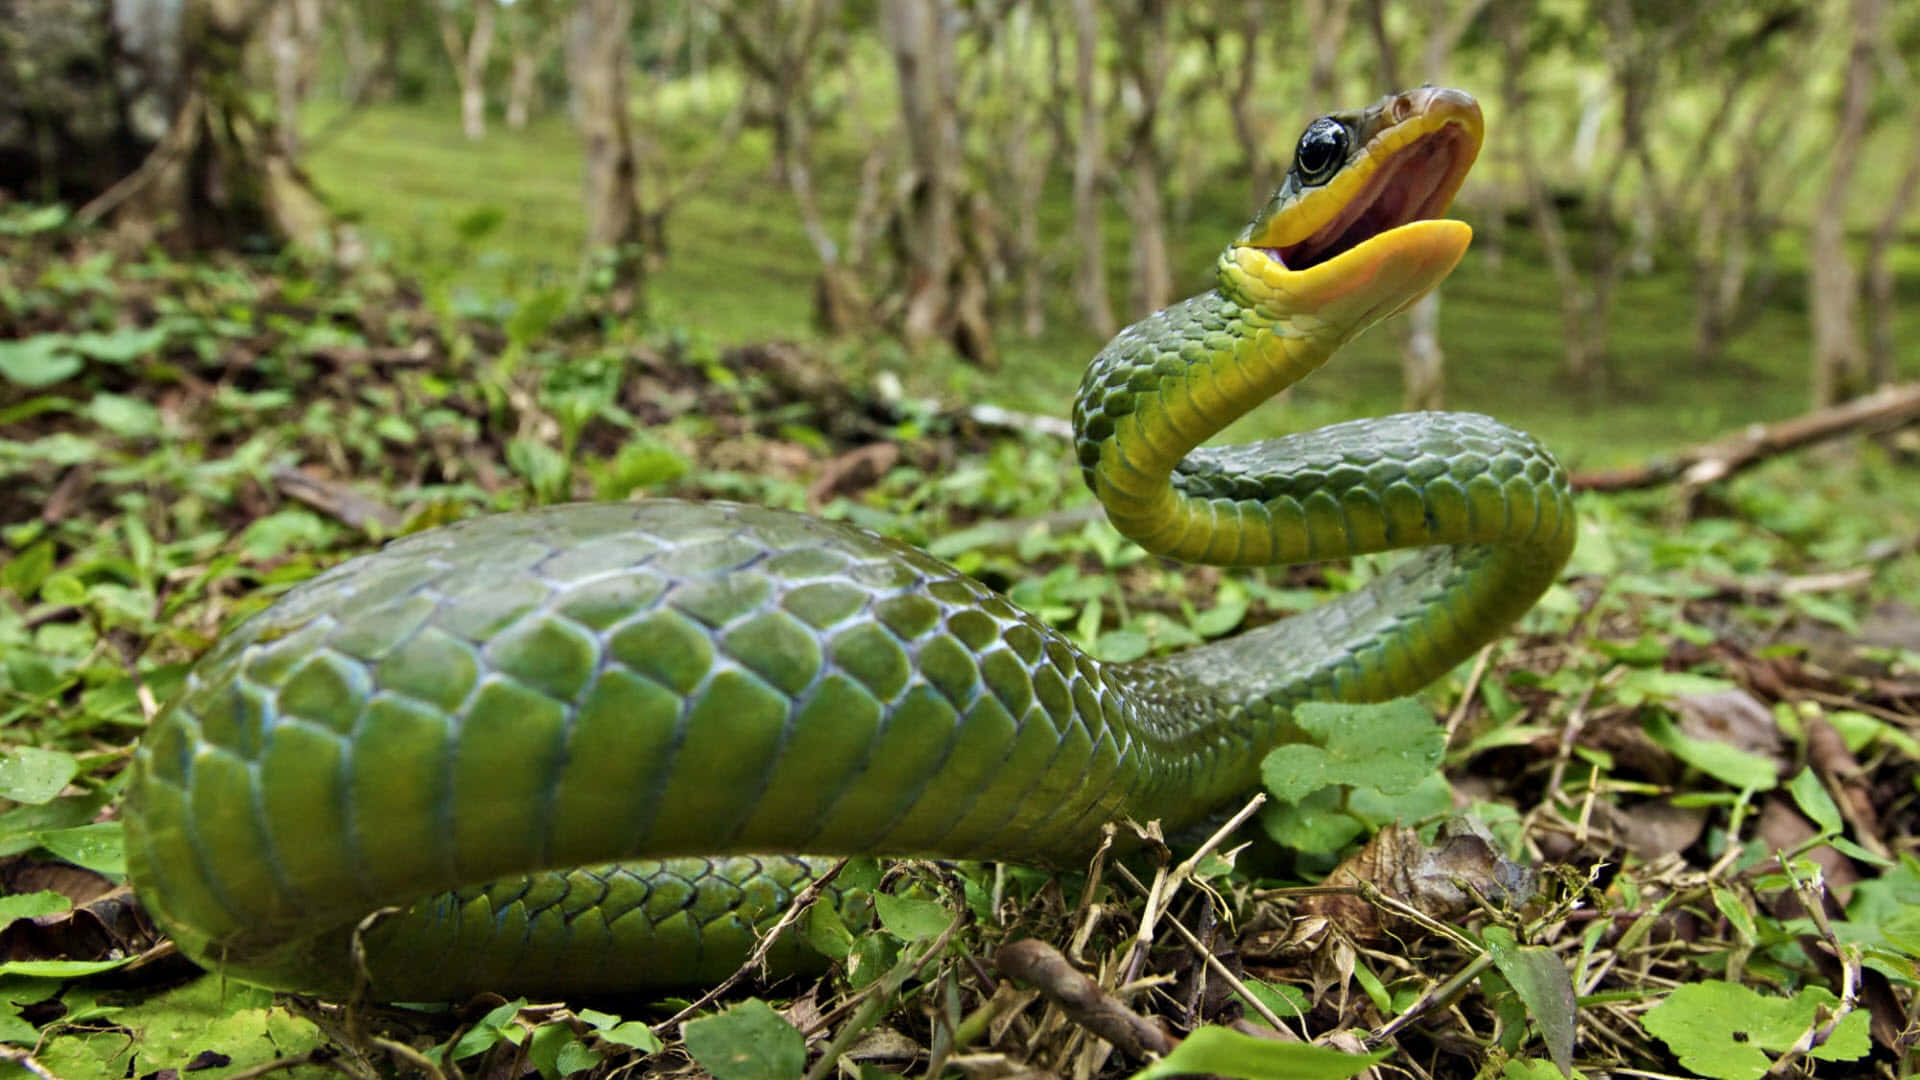 Green Anacondain Habitat.jpg Wallpaper